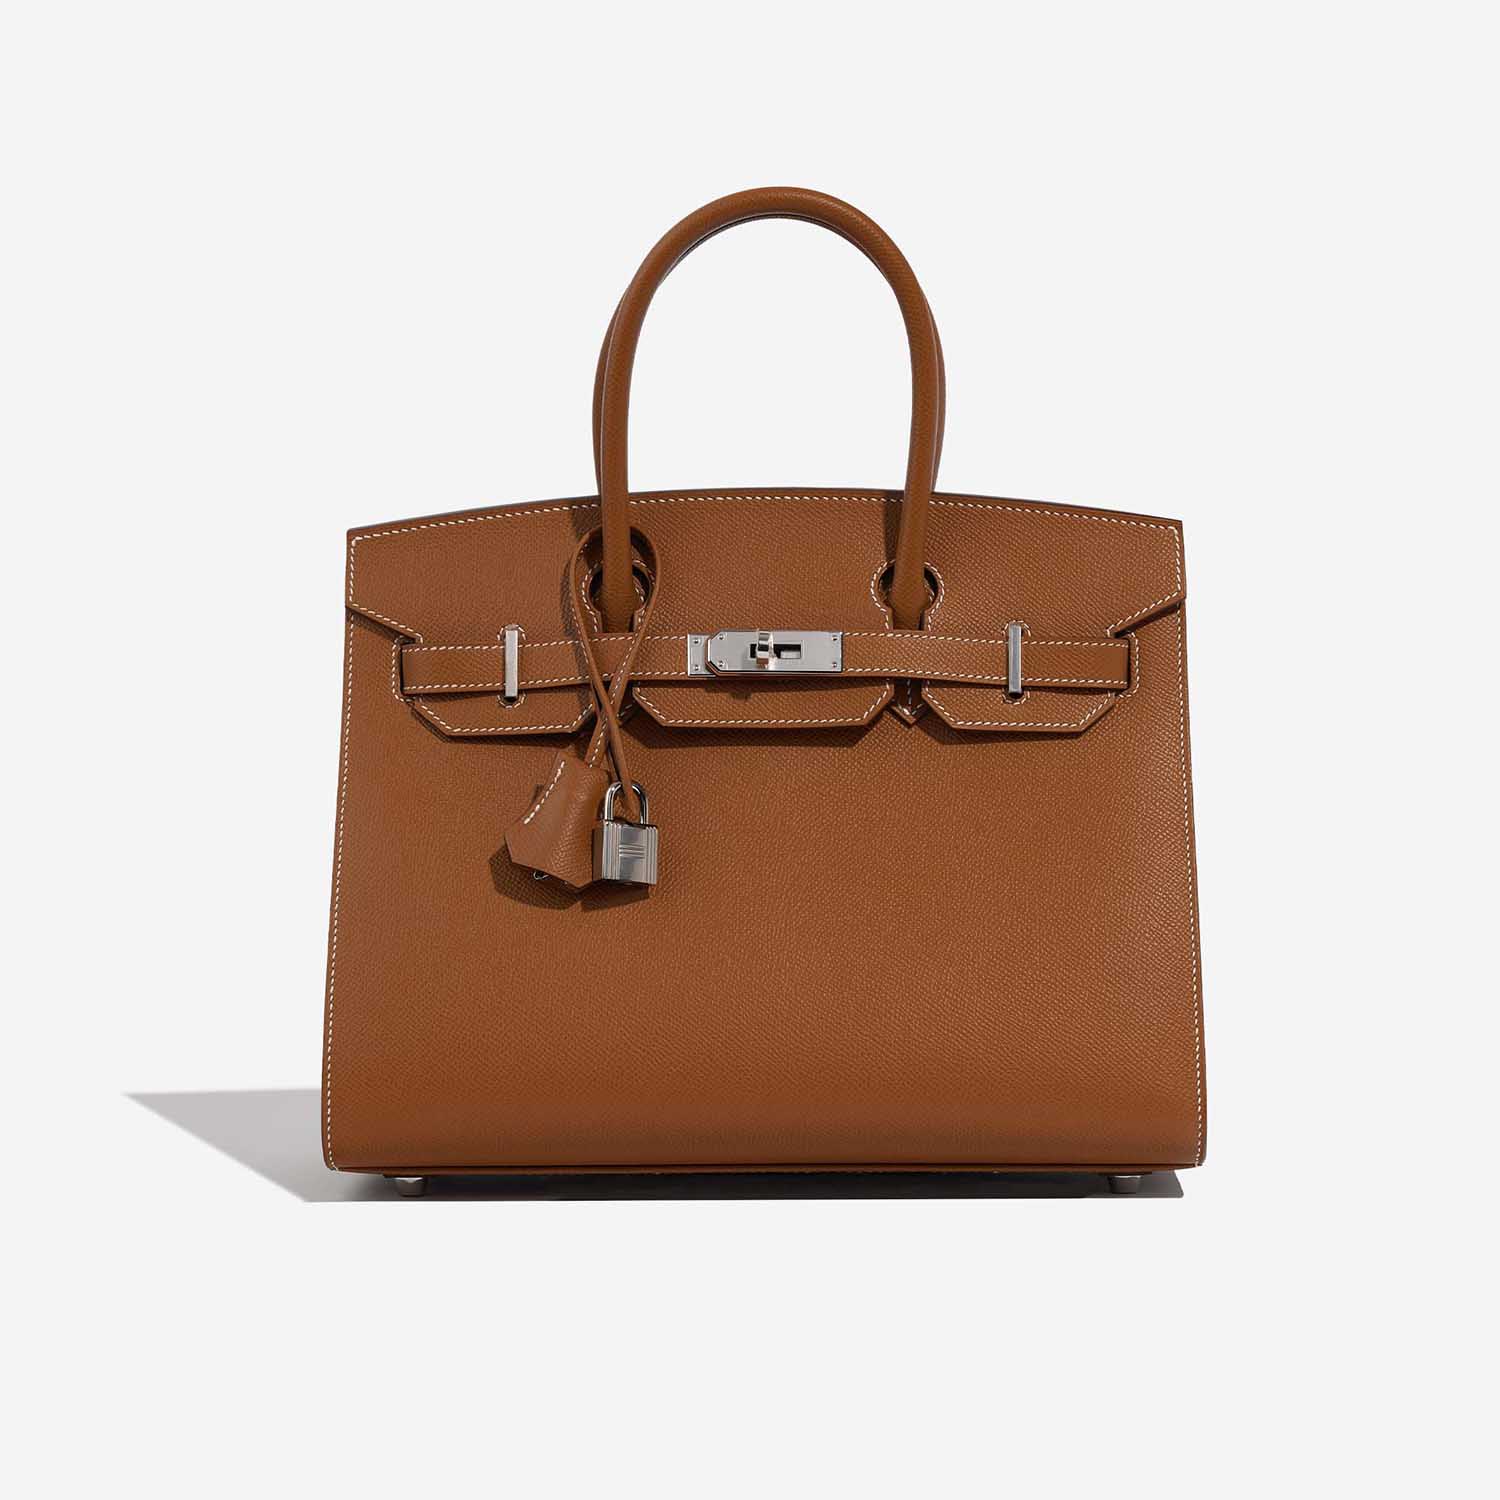 Hermès Birkin 30 Gold Front | Verkaufen Sie Ihre Designer-Tasche auf Saclab.com